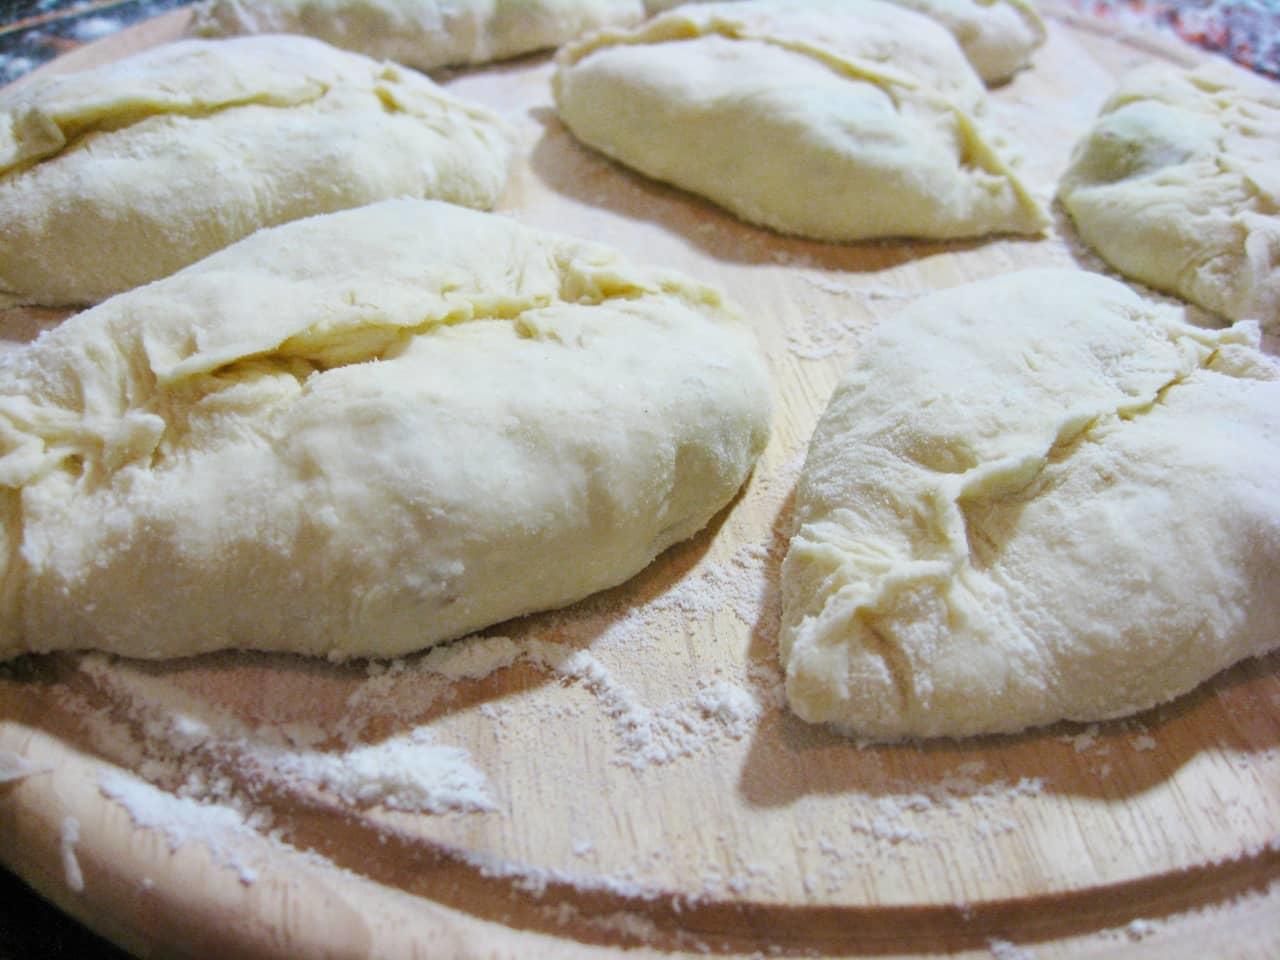 После того, как тесто побыло в теплом месте 1,5 часа, можно приступать к формированию пирожков